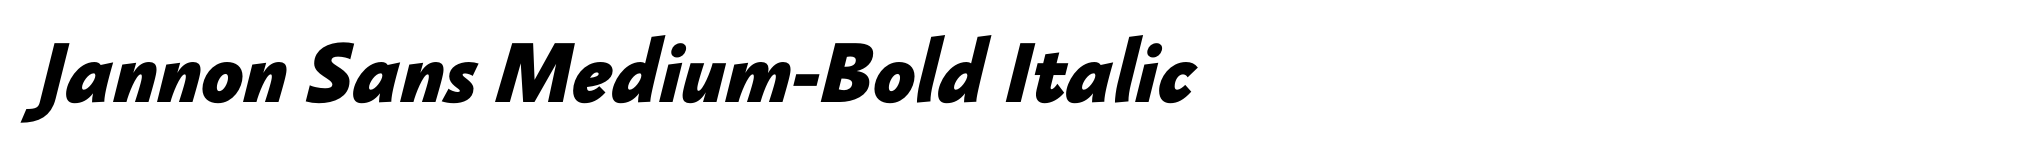 Jannon Sans Medium-Bold Italic image